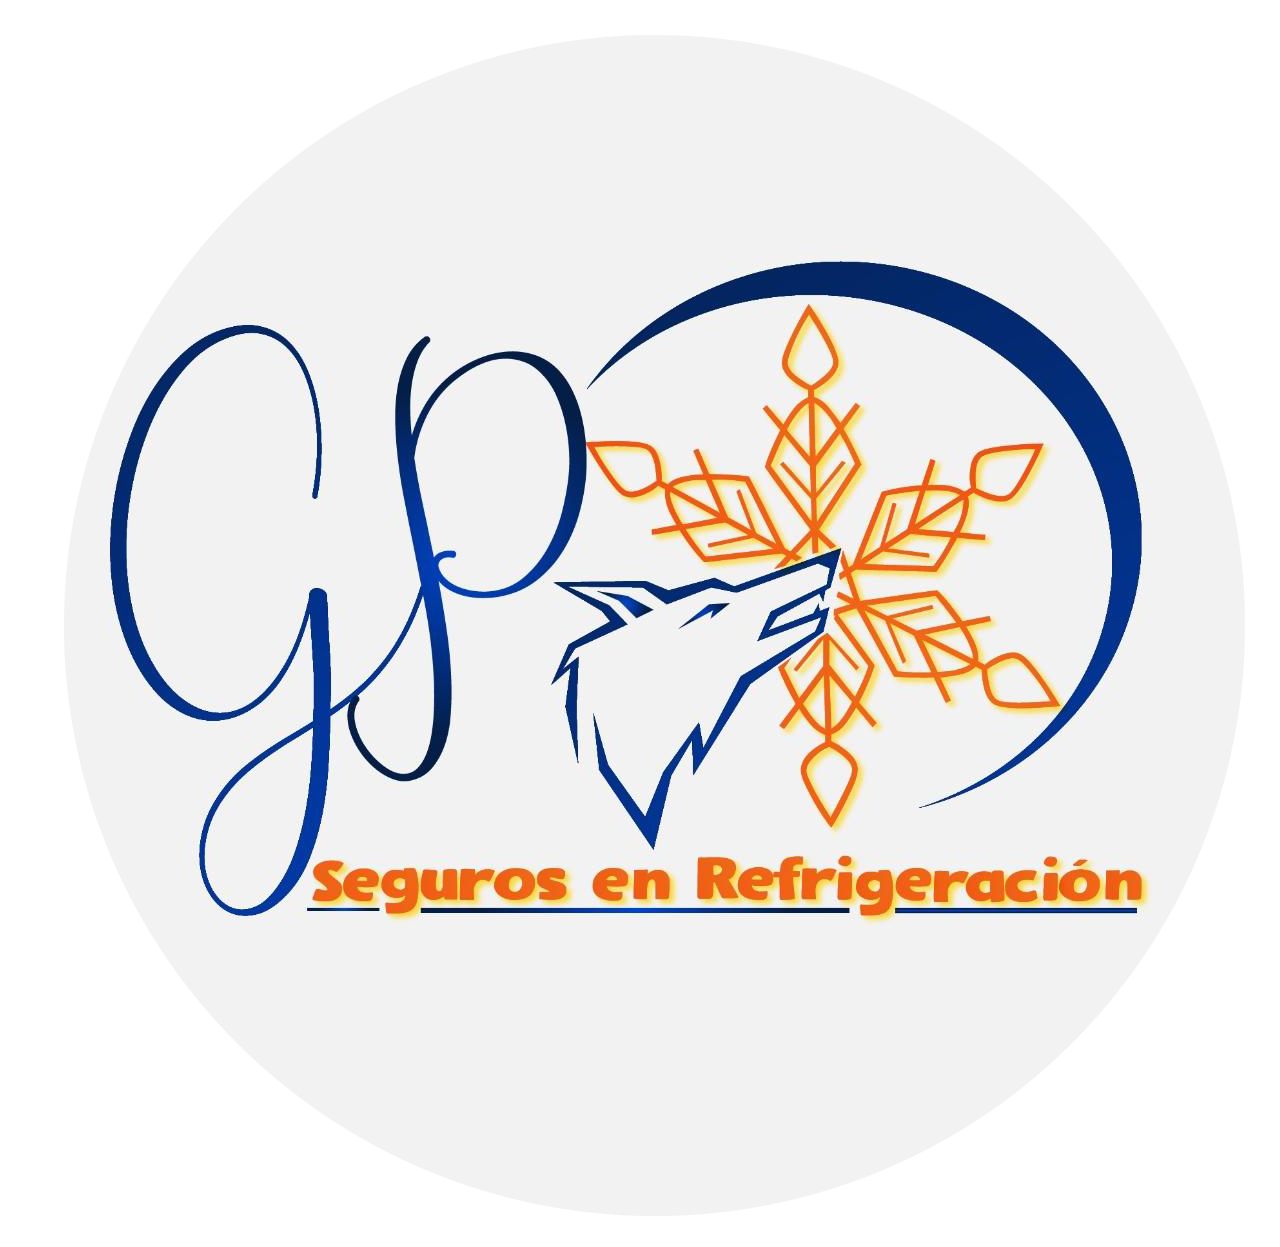 GP – Seguros en Refrigeración